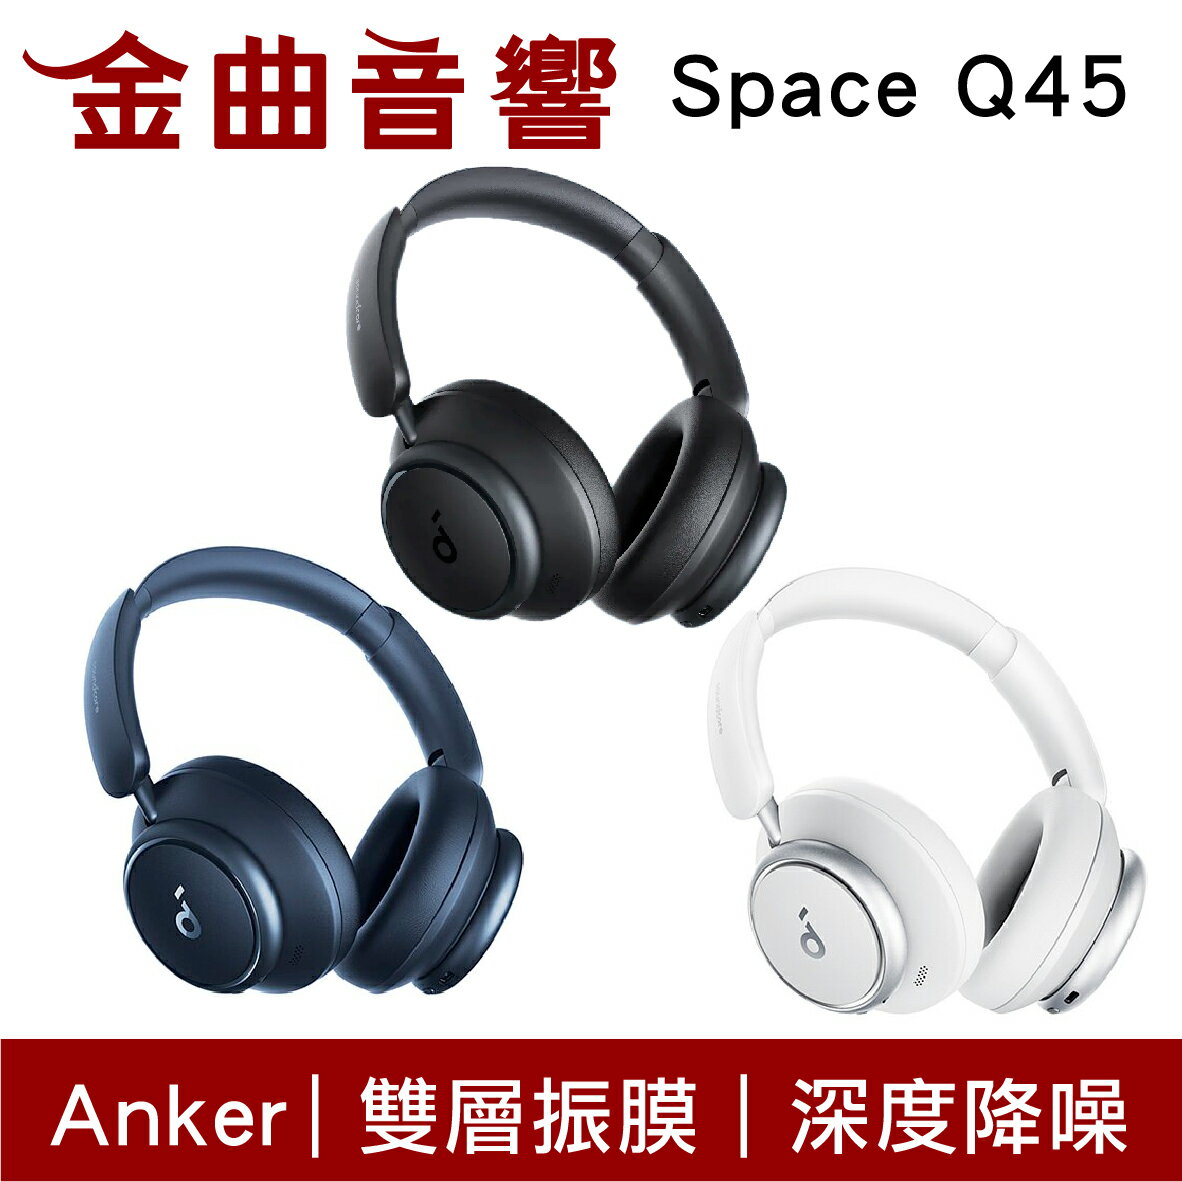 Anker Soundcore Space Q45 超感降噪硬核續航有線/藍牙耳罩式耳機